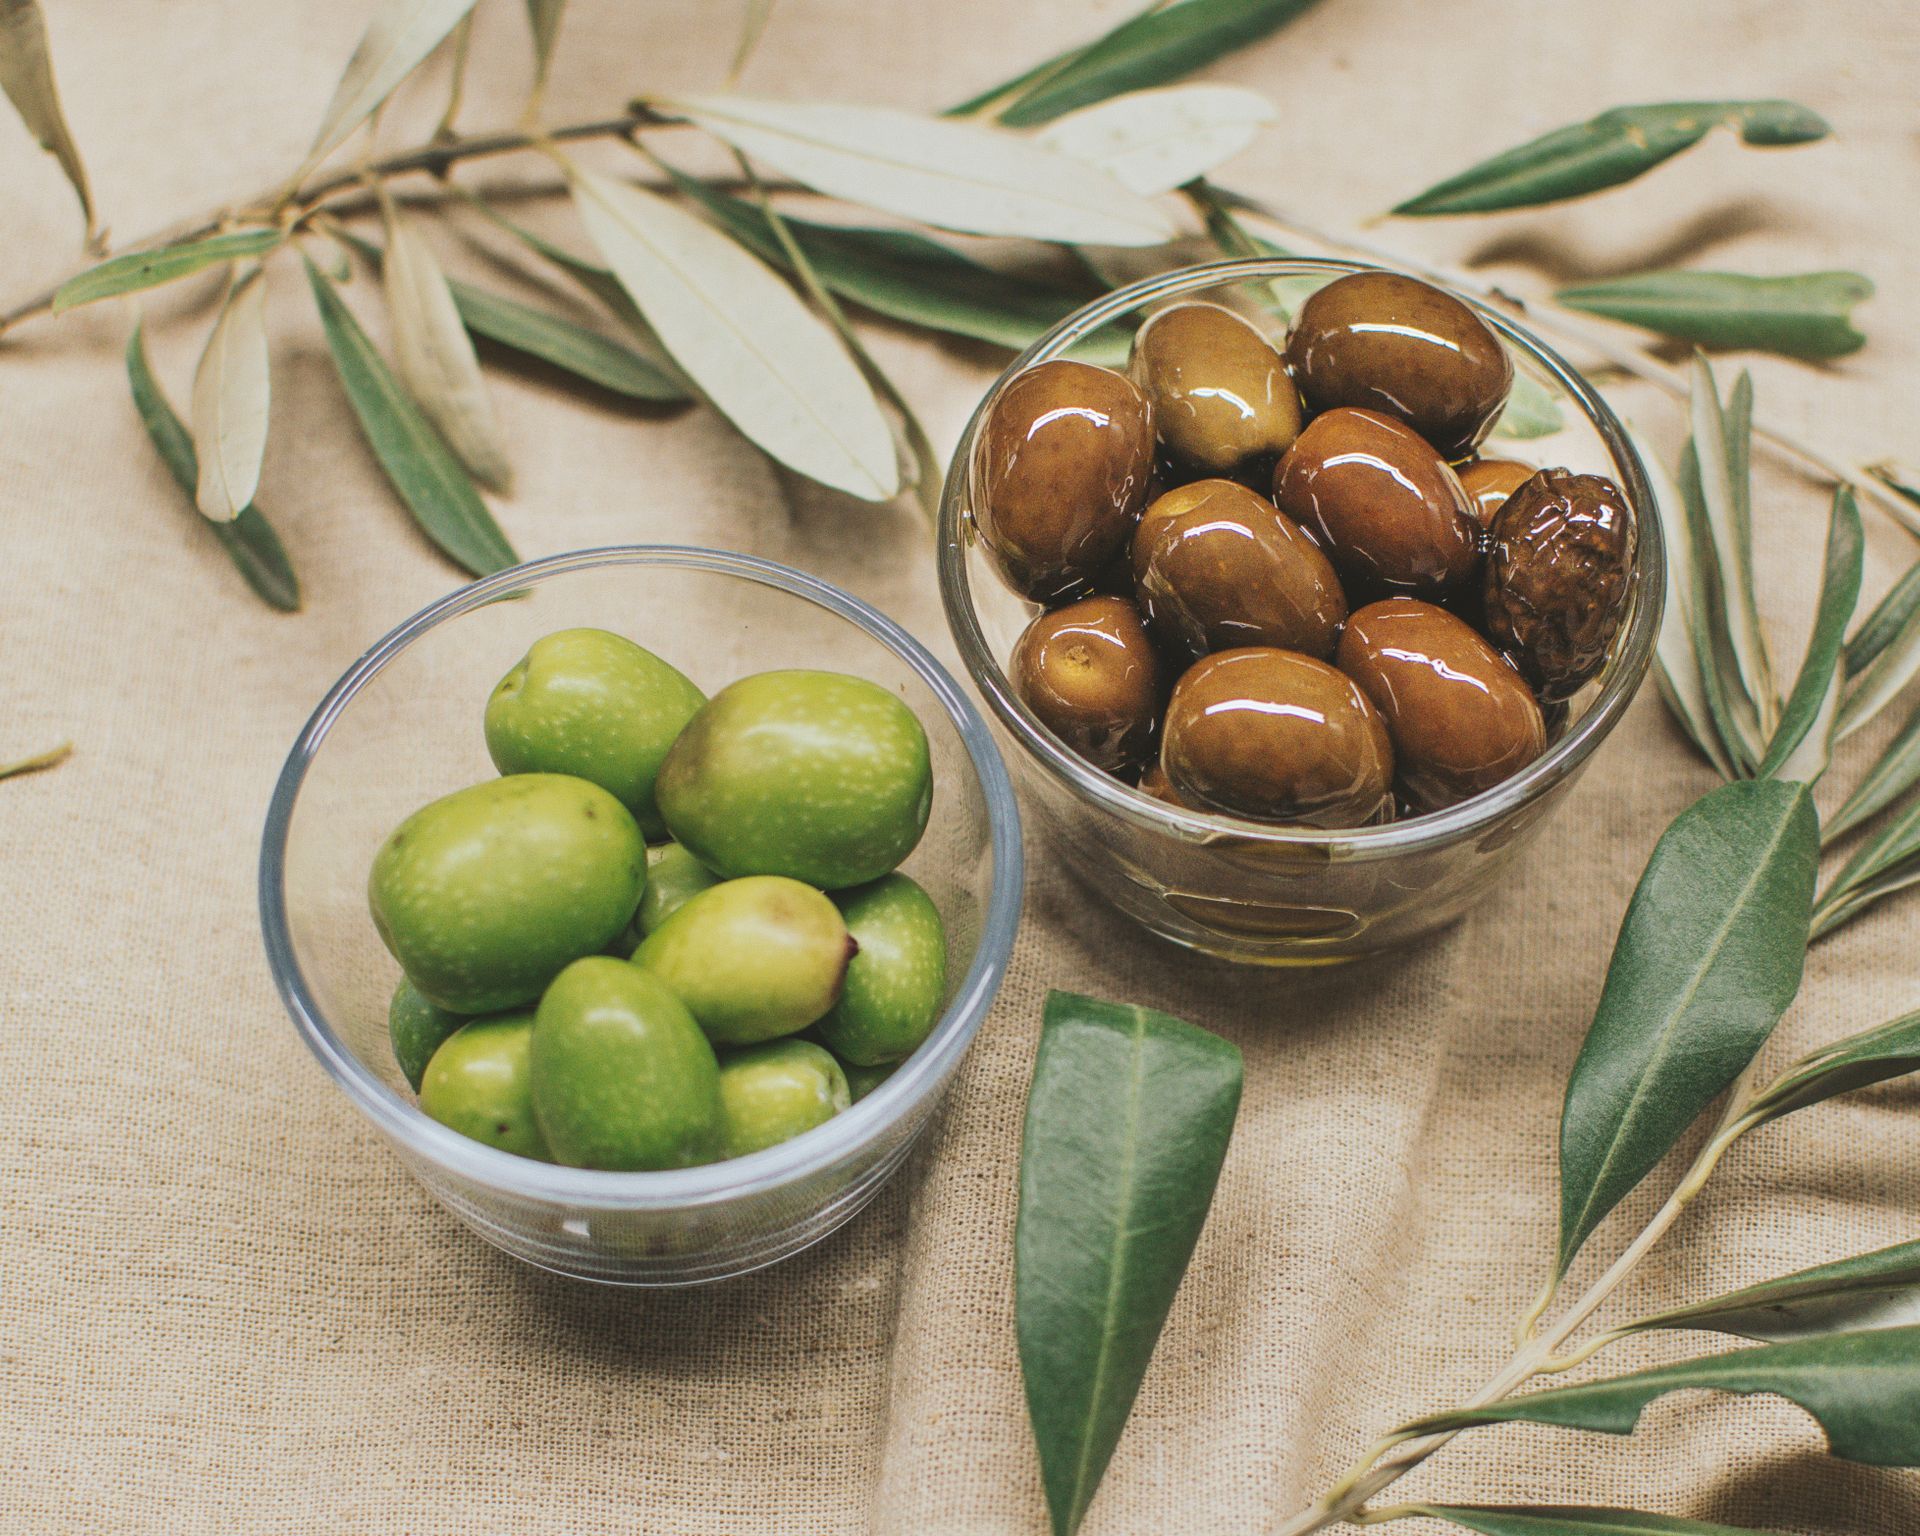 Olivy v sklenených miskách, olivové ratolesti